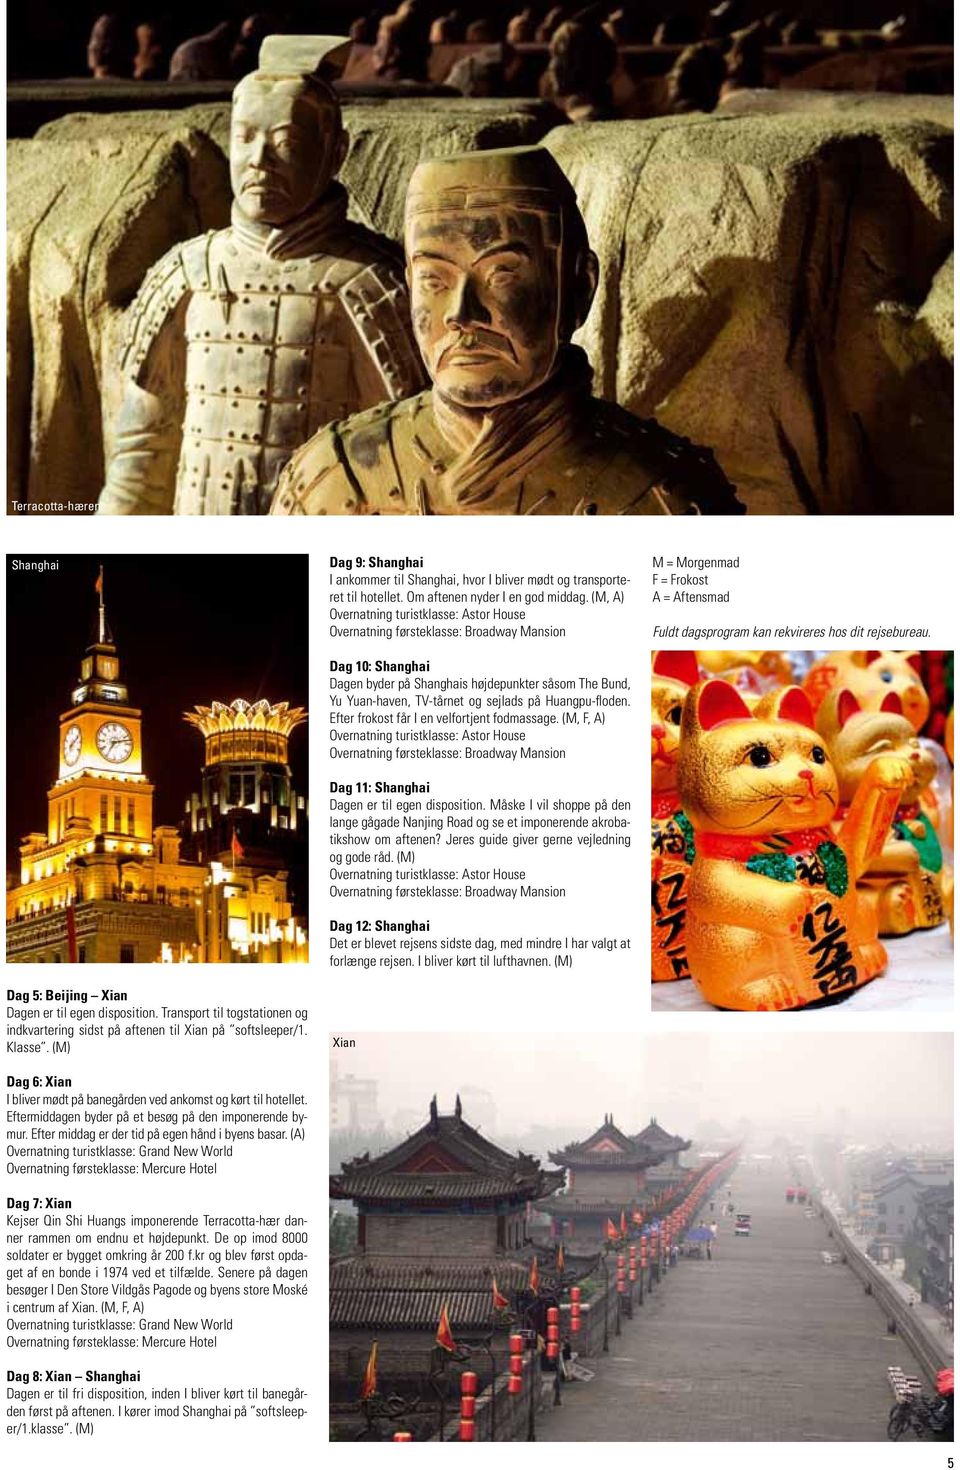 (A) Overnatning turistklasse: Grand New World Overnatning førsteklasse: Mercure Hotel Dag 7: Xian Kejser Qin Shi Huangs imponerende Terracotta-hær danner rammen om endnu et højdepunkt.